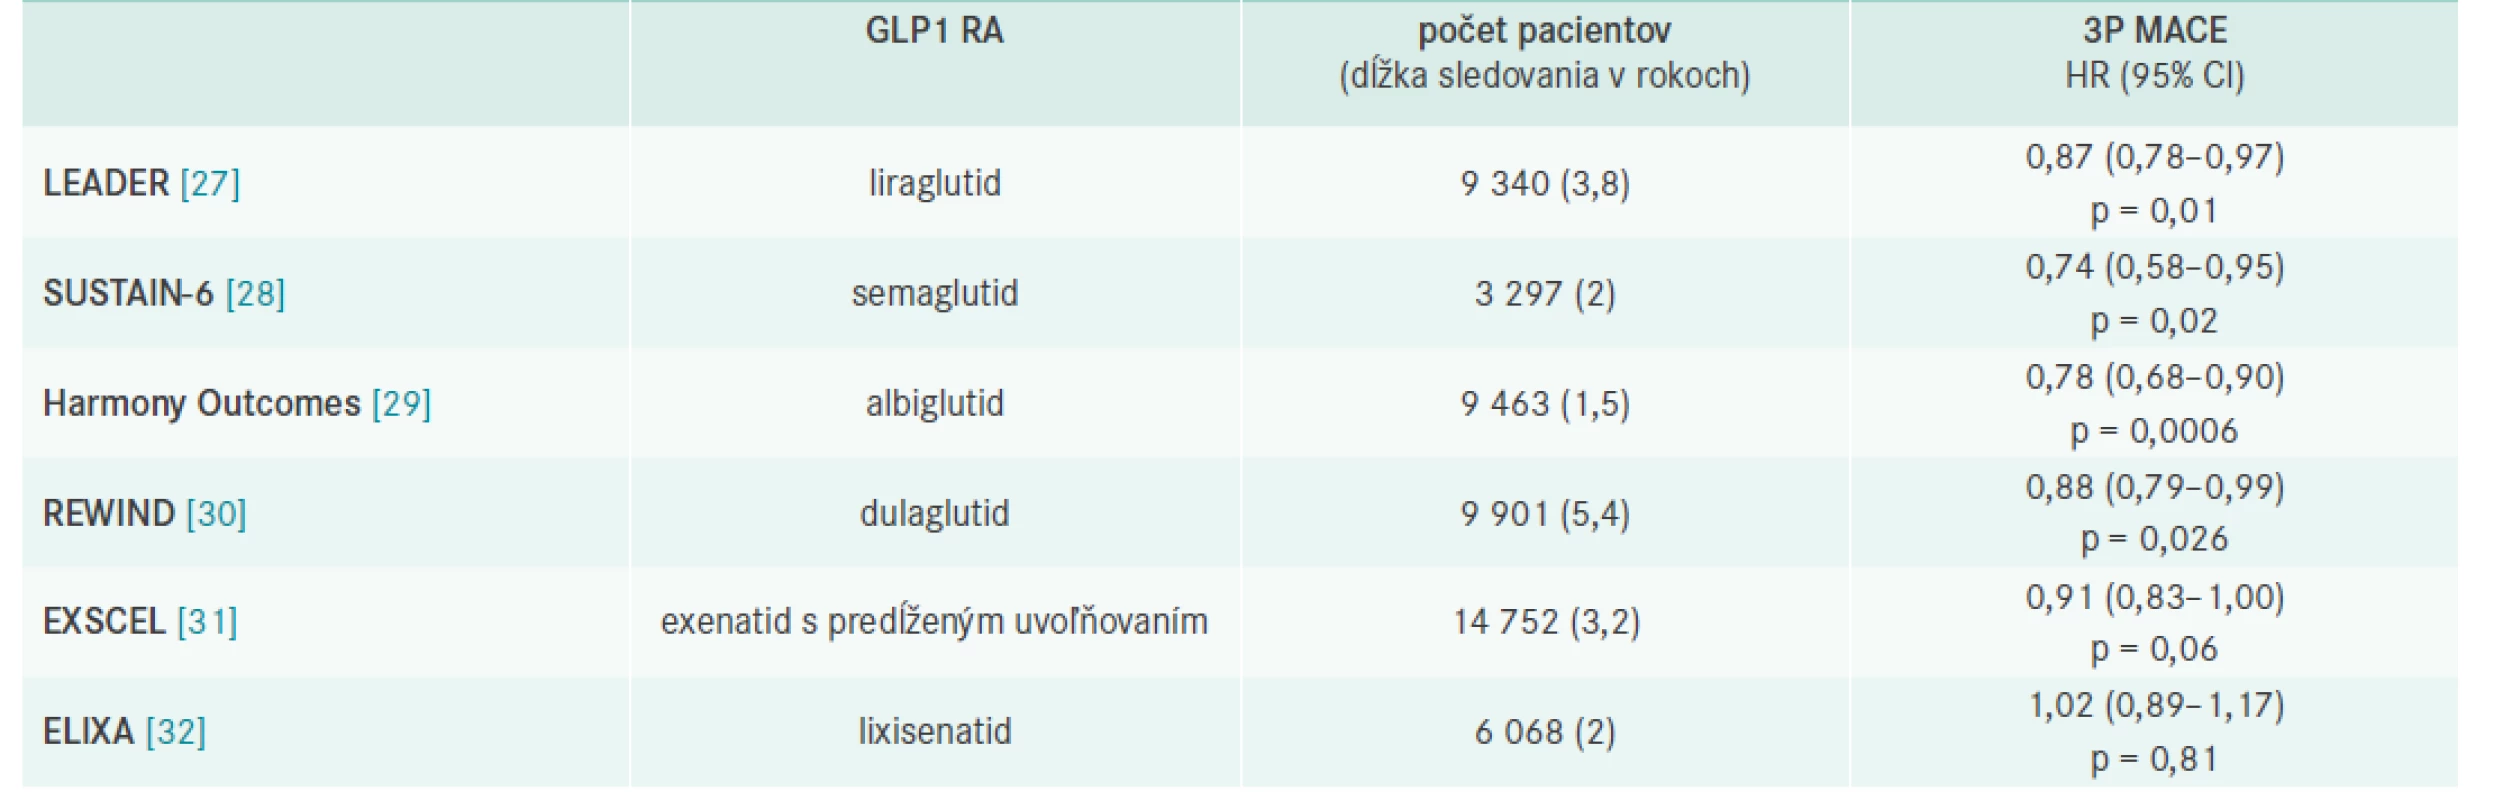 Výsledky prospektívnych placebom kontrolovaných štúdií s GLP1 RA